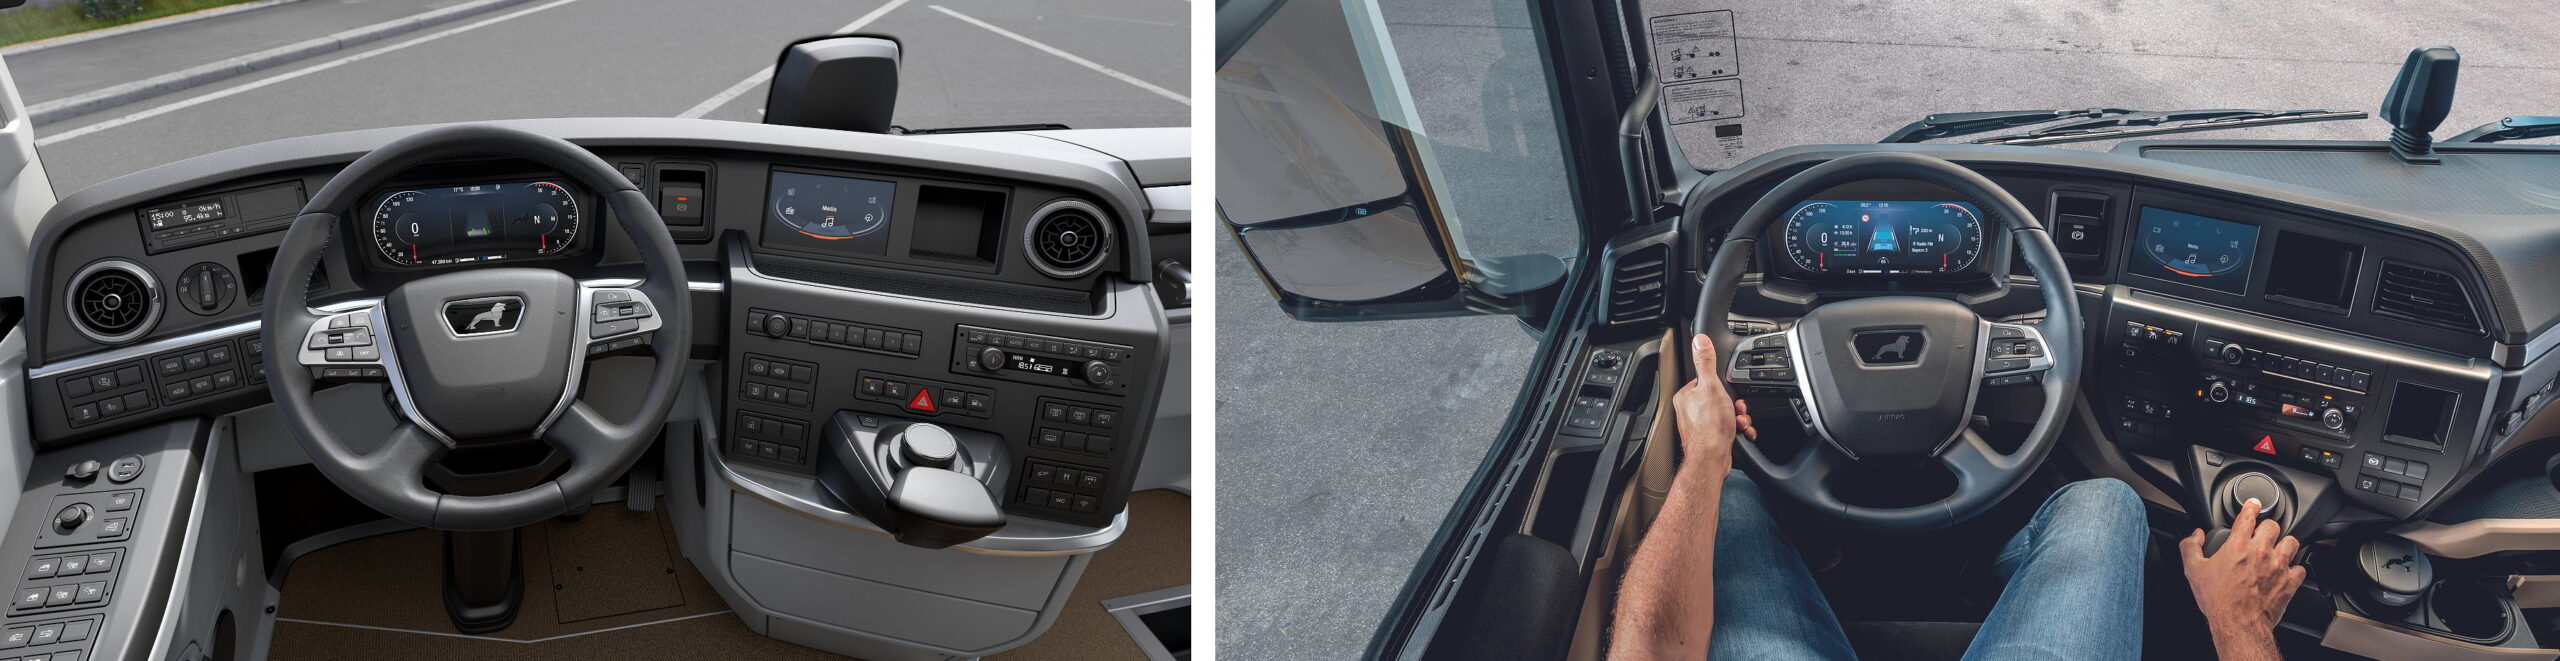 Digitales Cockpit im MAN Lion's Coach links im Bild - rechts das bereits im Jahr 2020 vorgestellte digitale Cockpit der neuen Generation der MAN TGX Lkw.